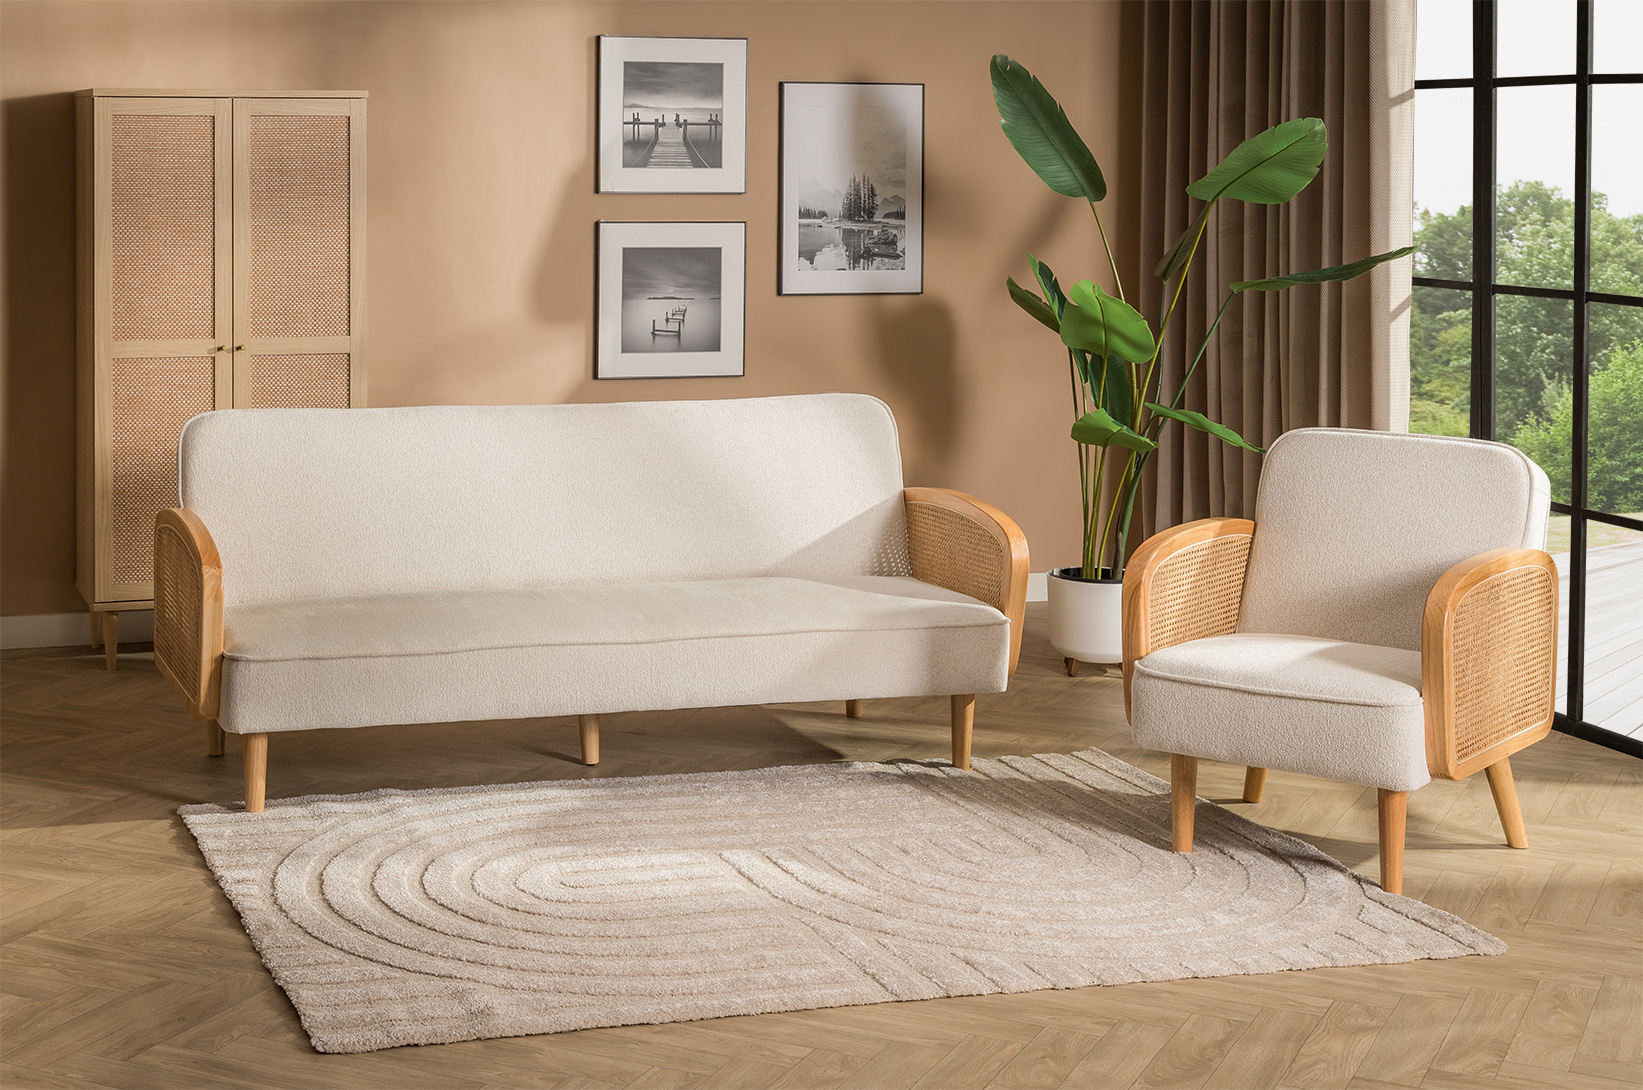 Spokój i harmonia w Twoim salonie: beżowa kanapa w aranżacjach inspirowanych filozofią zen 